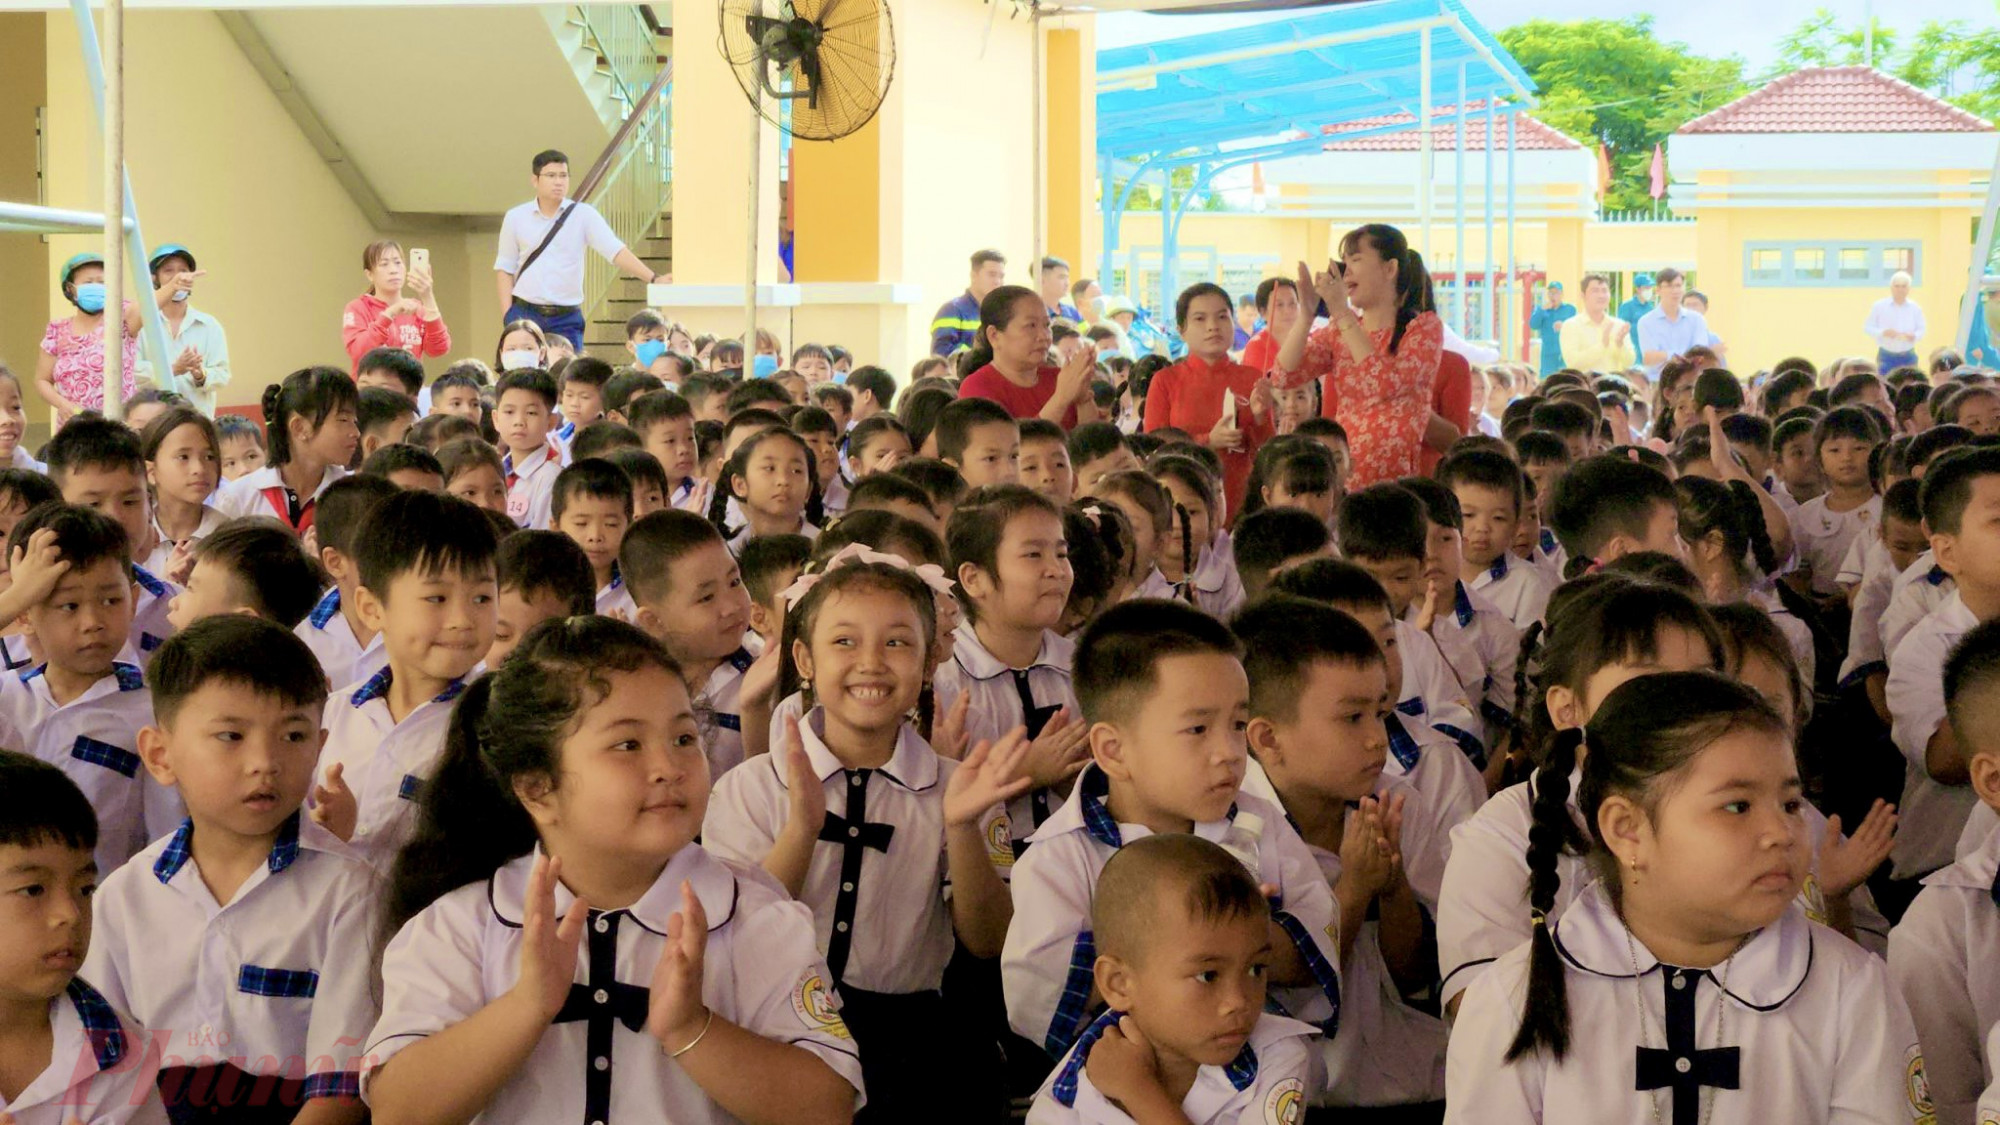 Học sinh náo nức trong ngày tựu trường tại trường tiểu học Rạch Già, huyện Bình Chánh, TPHCM